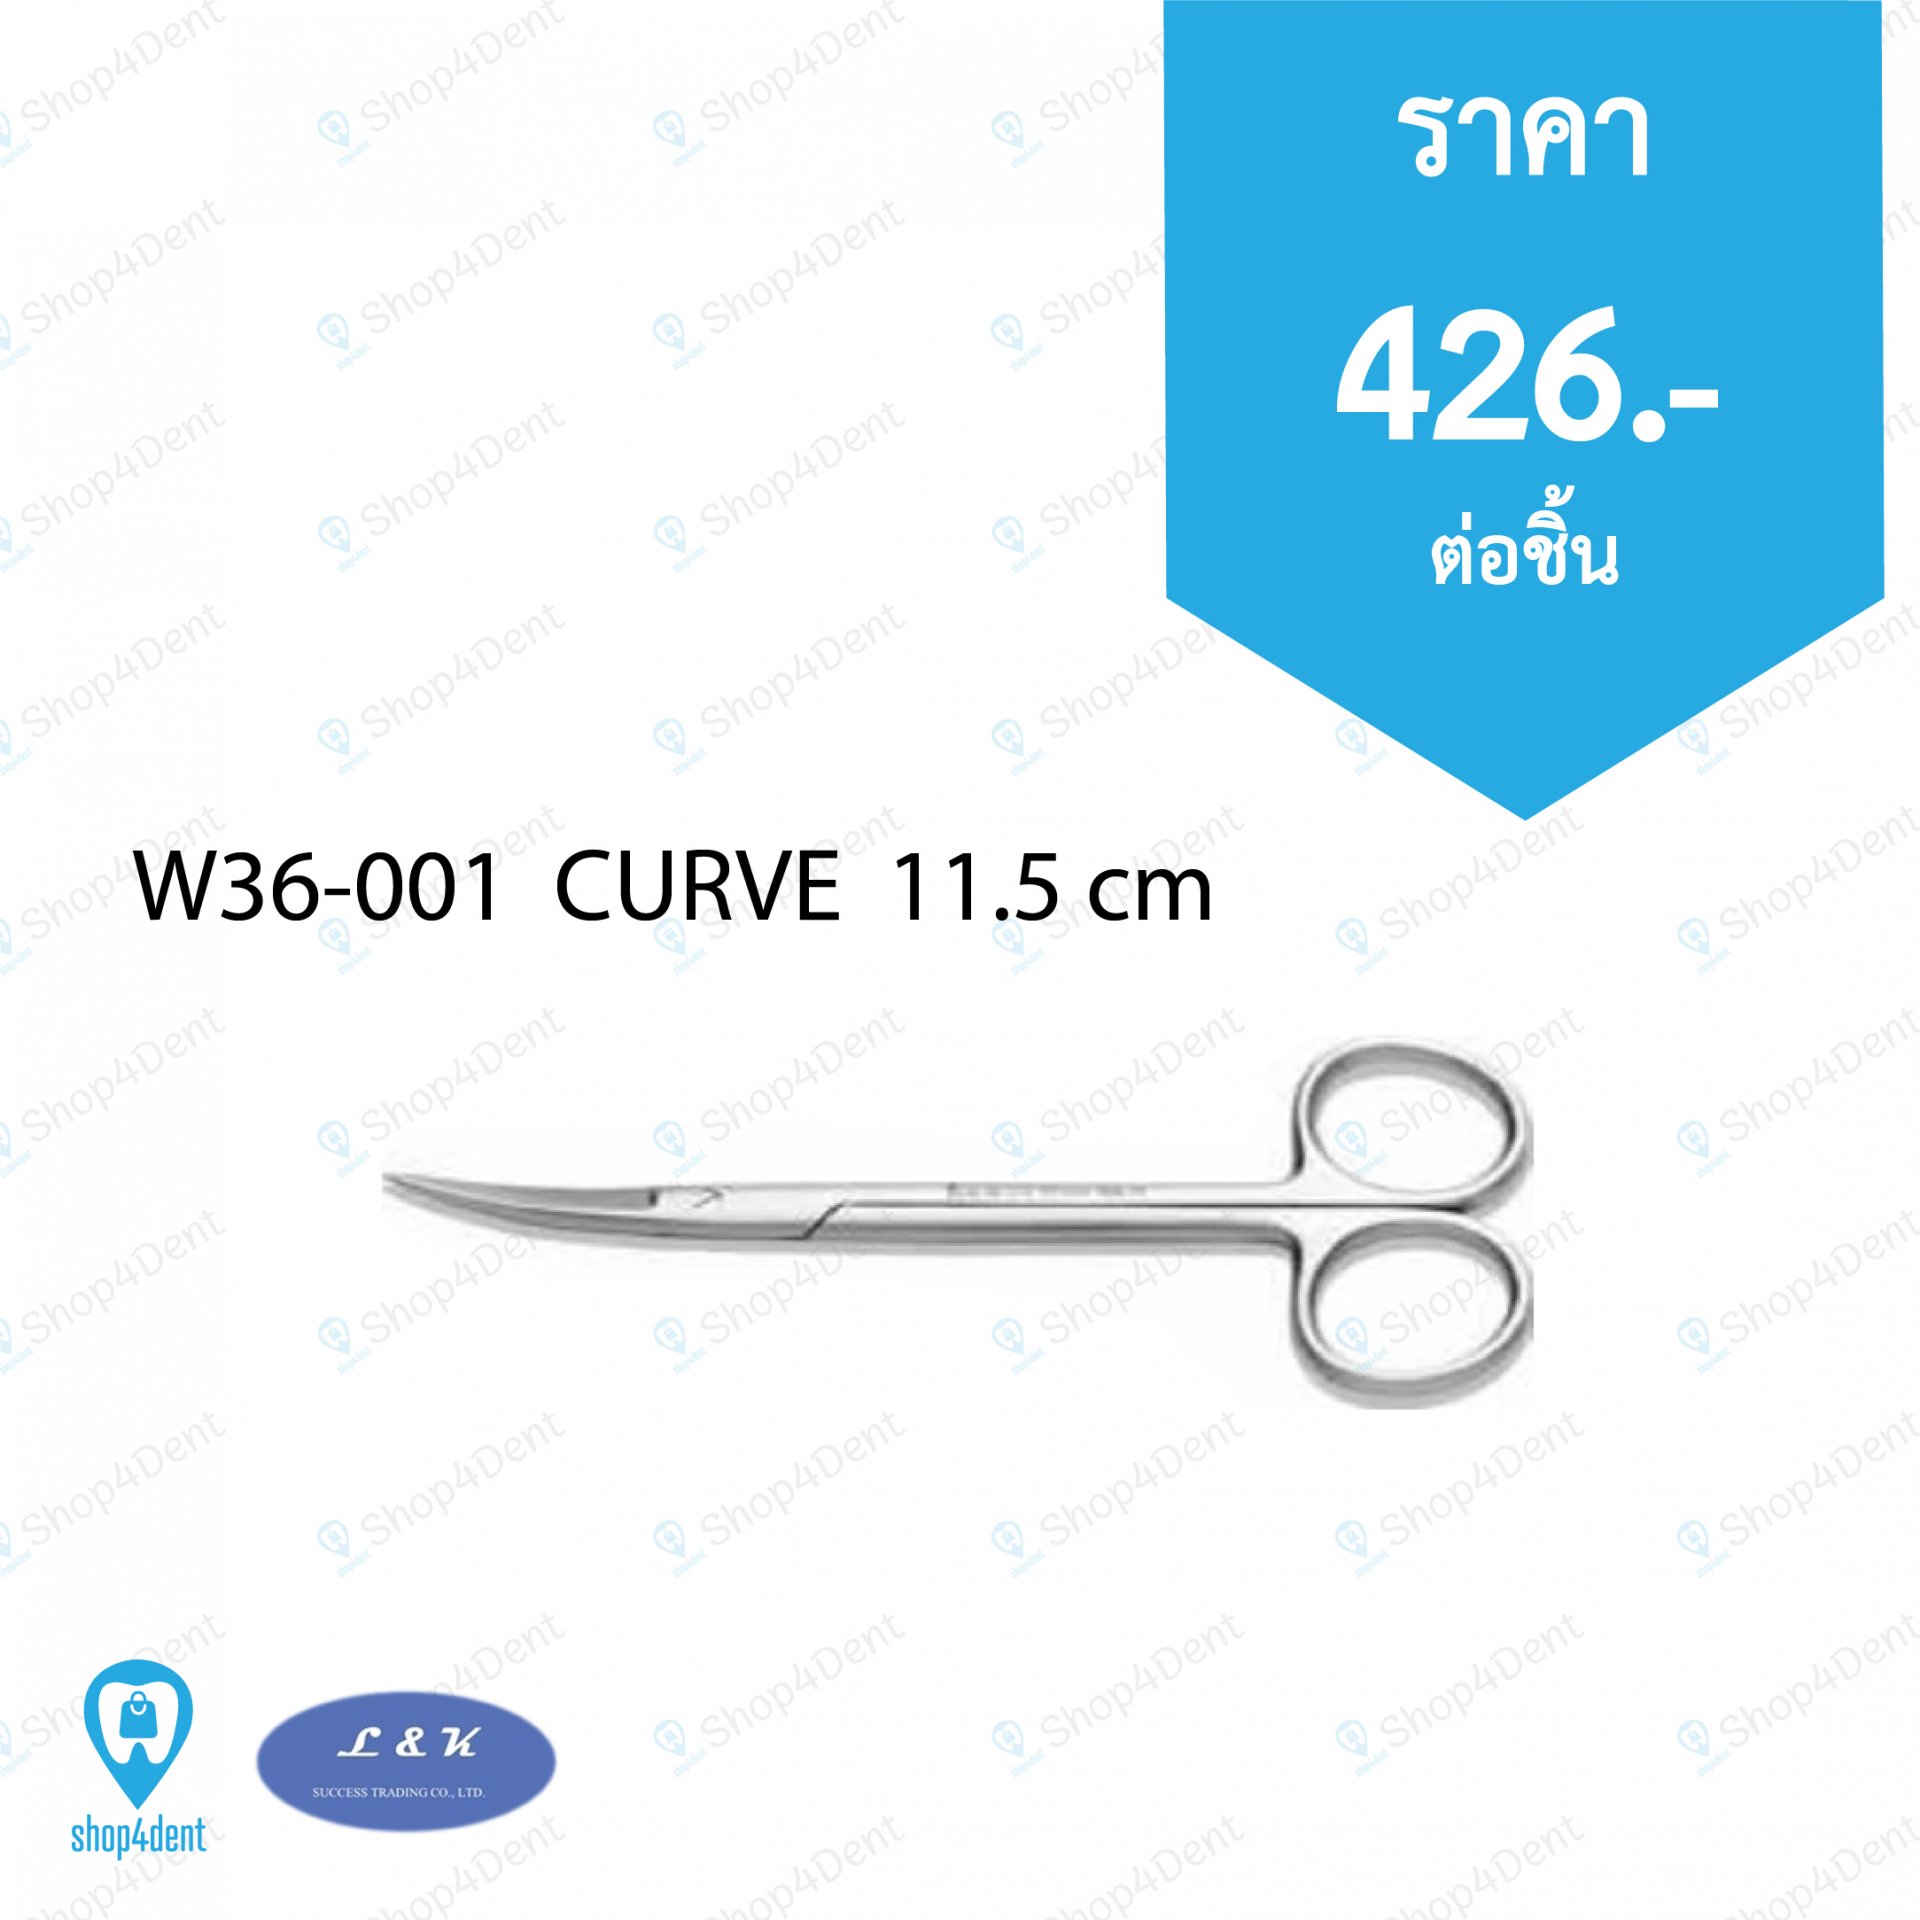 Dental Scissor_W36-001  CURVE  11.5 cm